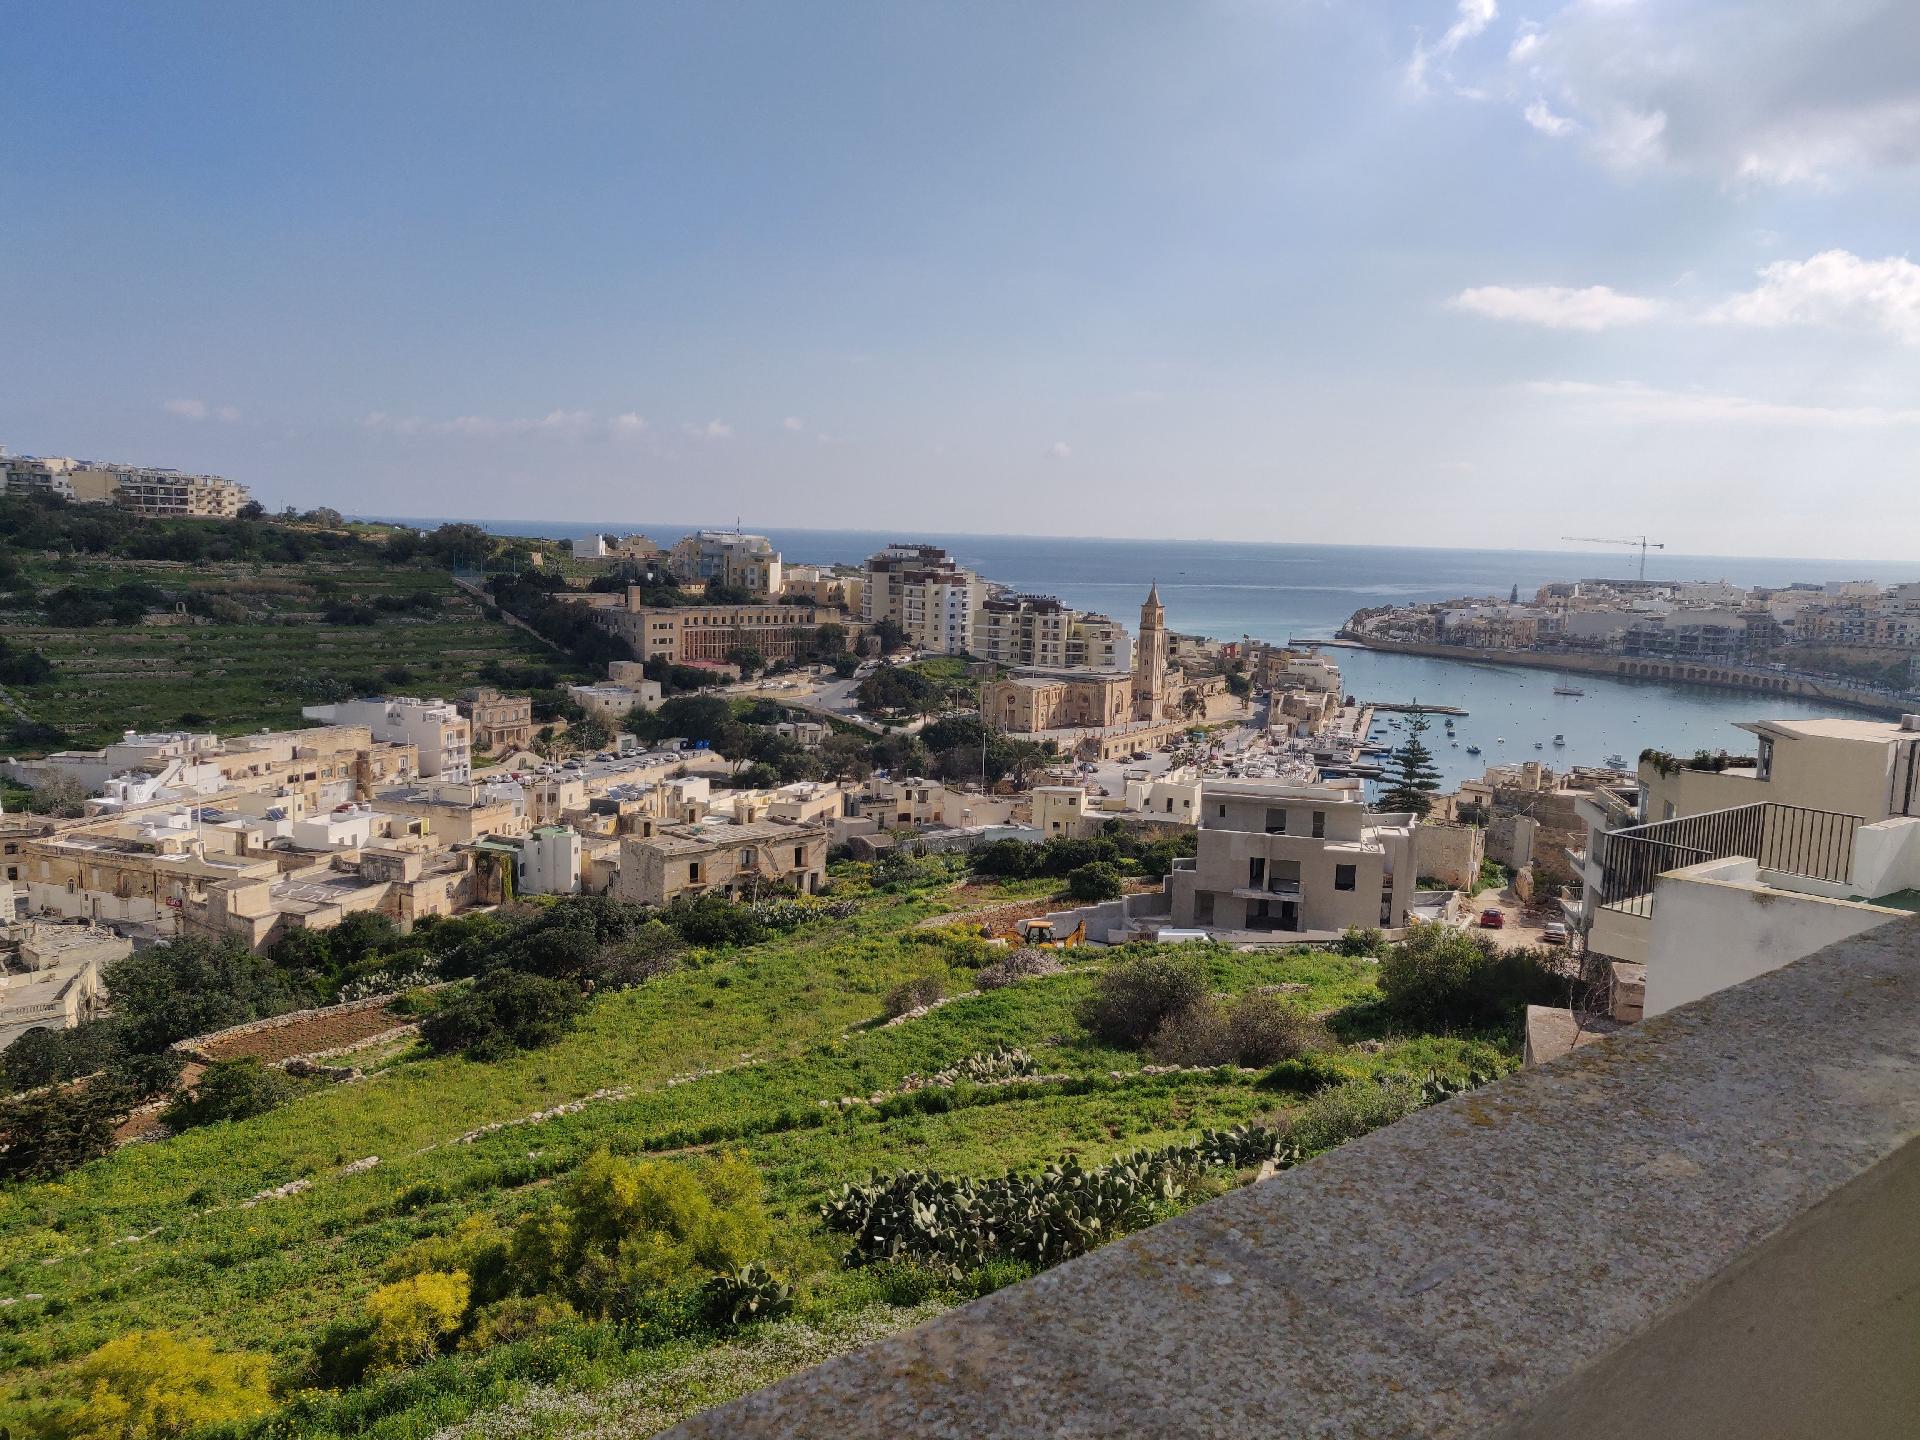 Ferienwohnung für 2 Personen 1 Kind ca 88 m² in Marsaskala Insel Malta Nordküste von Malta